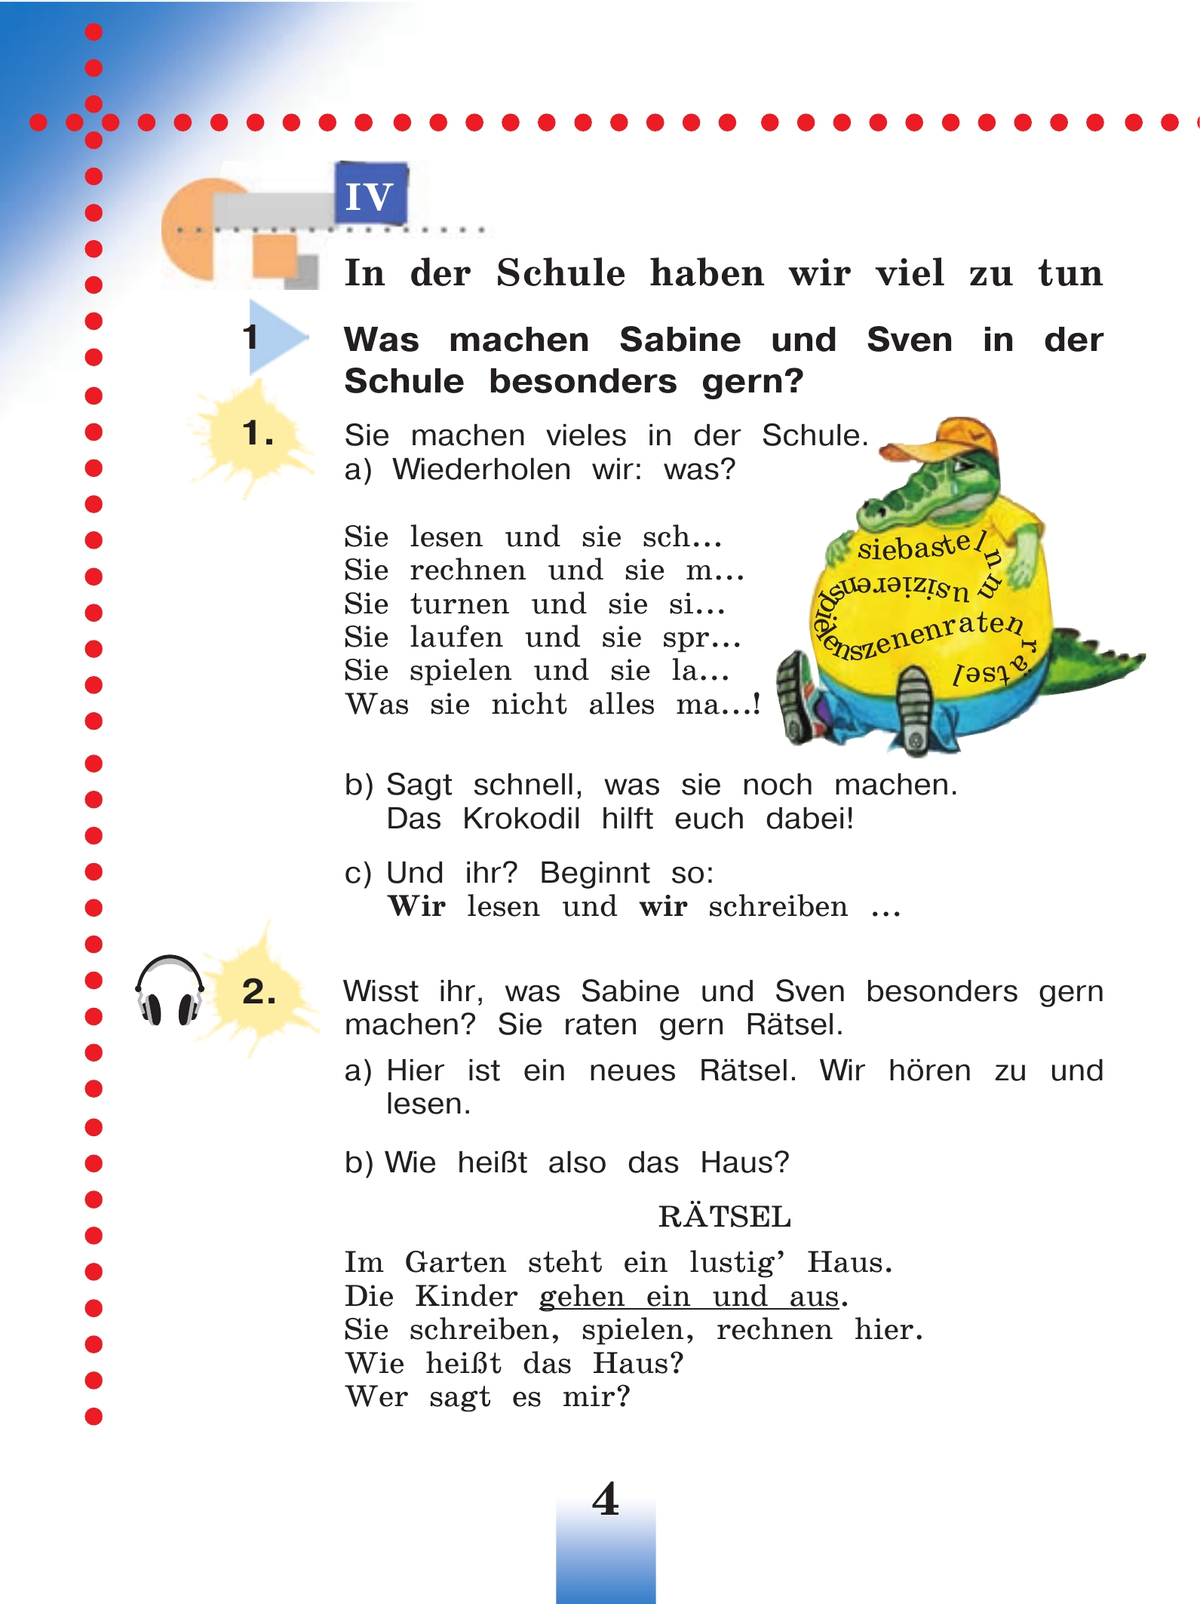 Немецкий язык. 3 класс. Учебник. В 2 ч. Часть 2 6